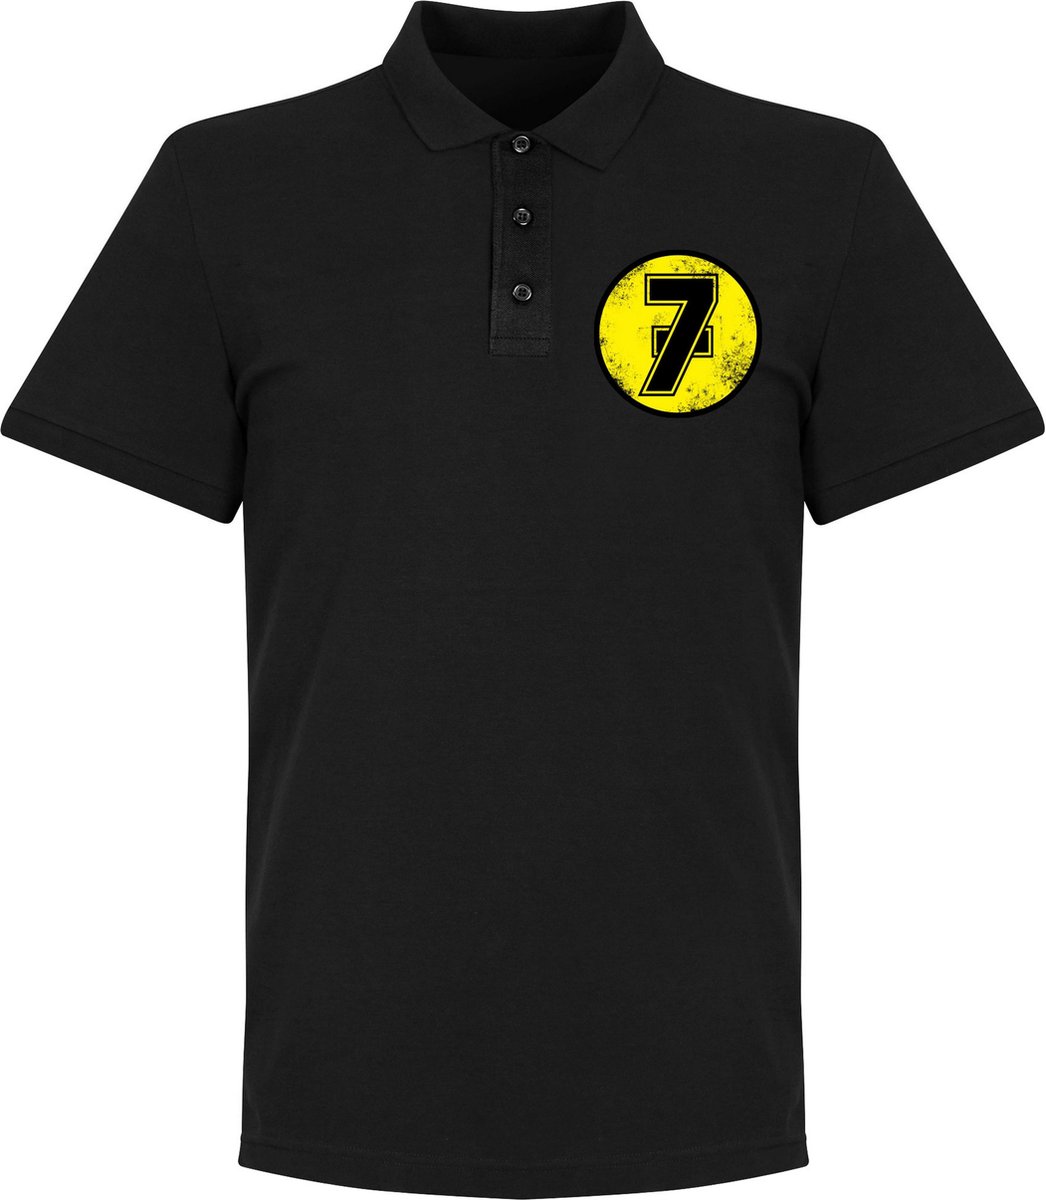 Barry Sheene No.7 Polo Shirt - Zwart - XL